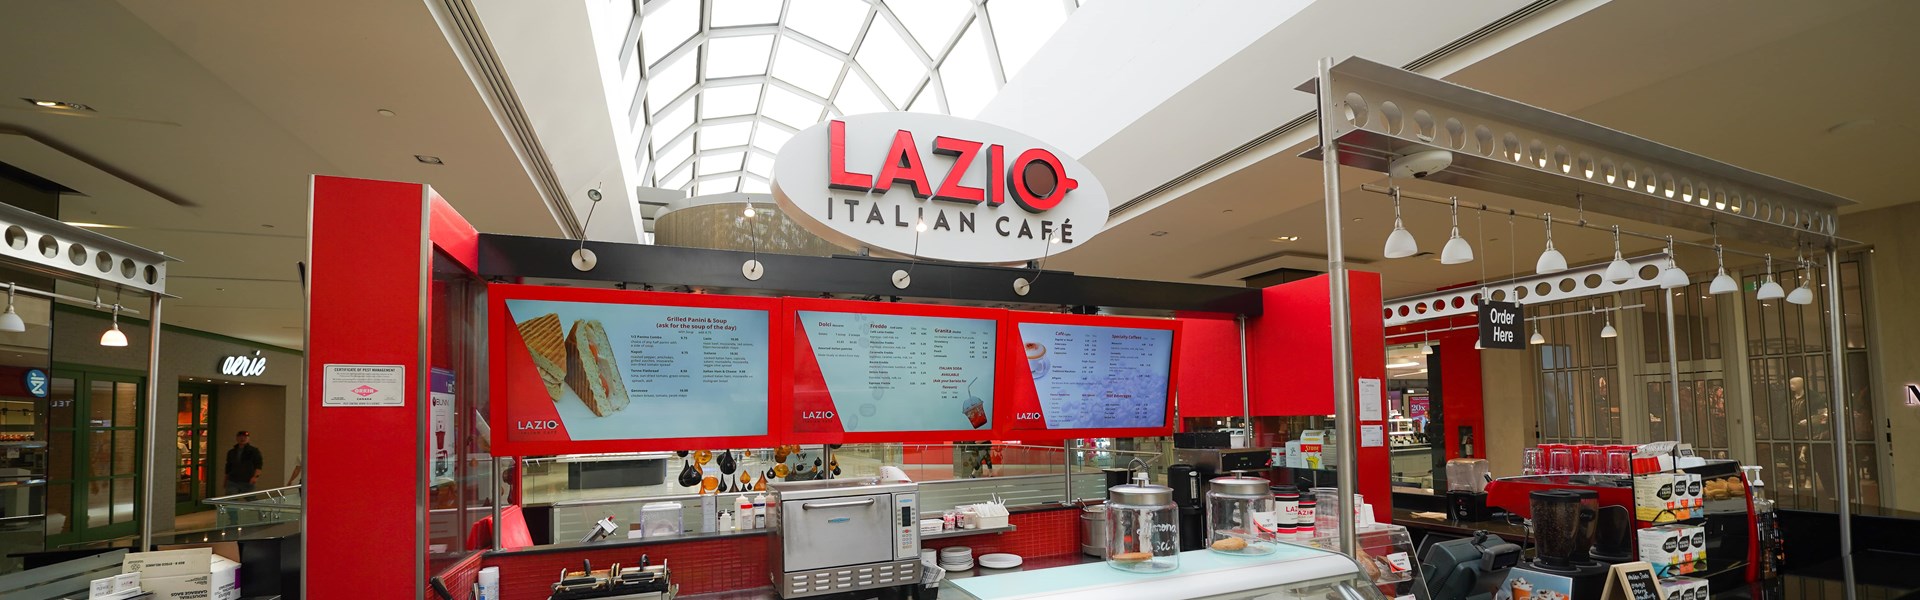 Lazio Italian Cafe